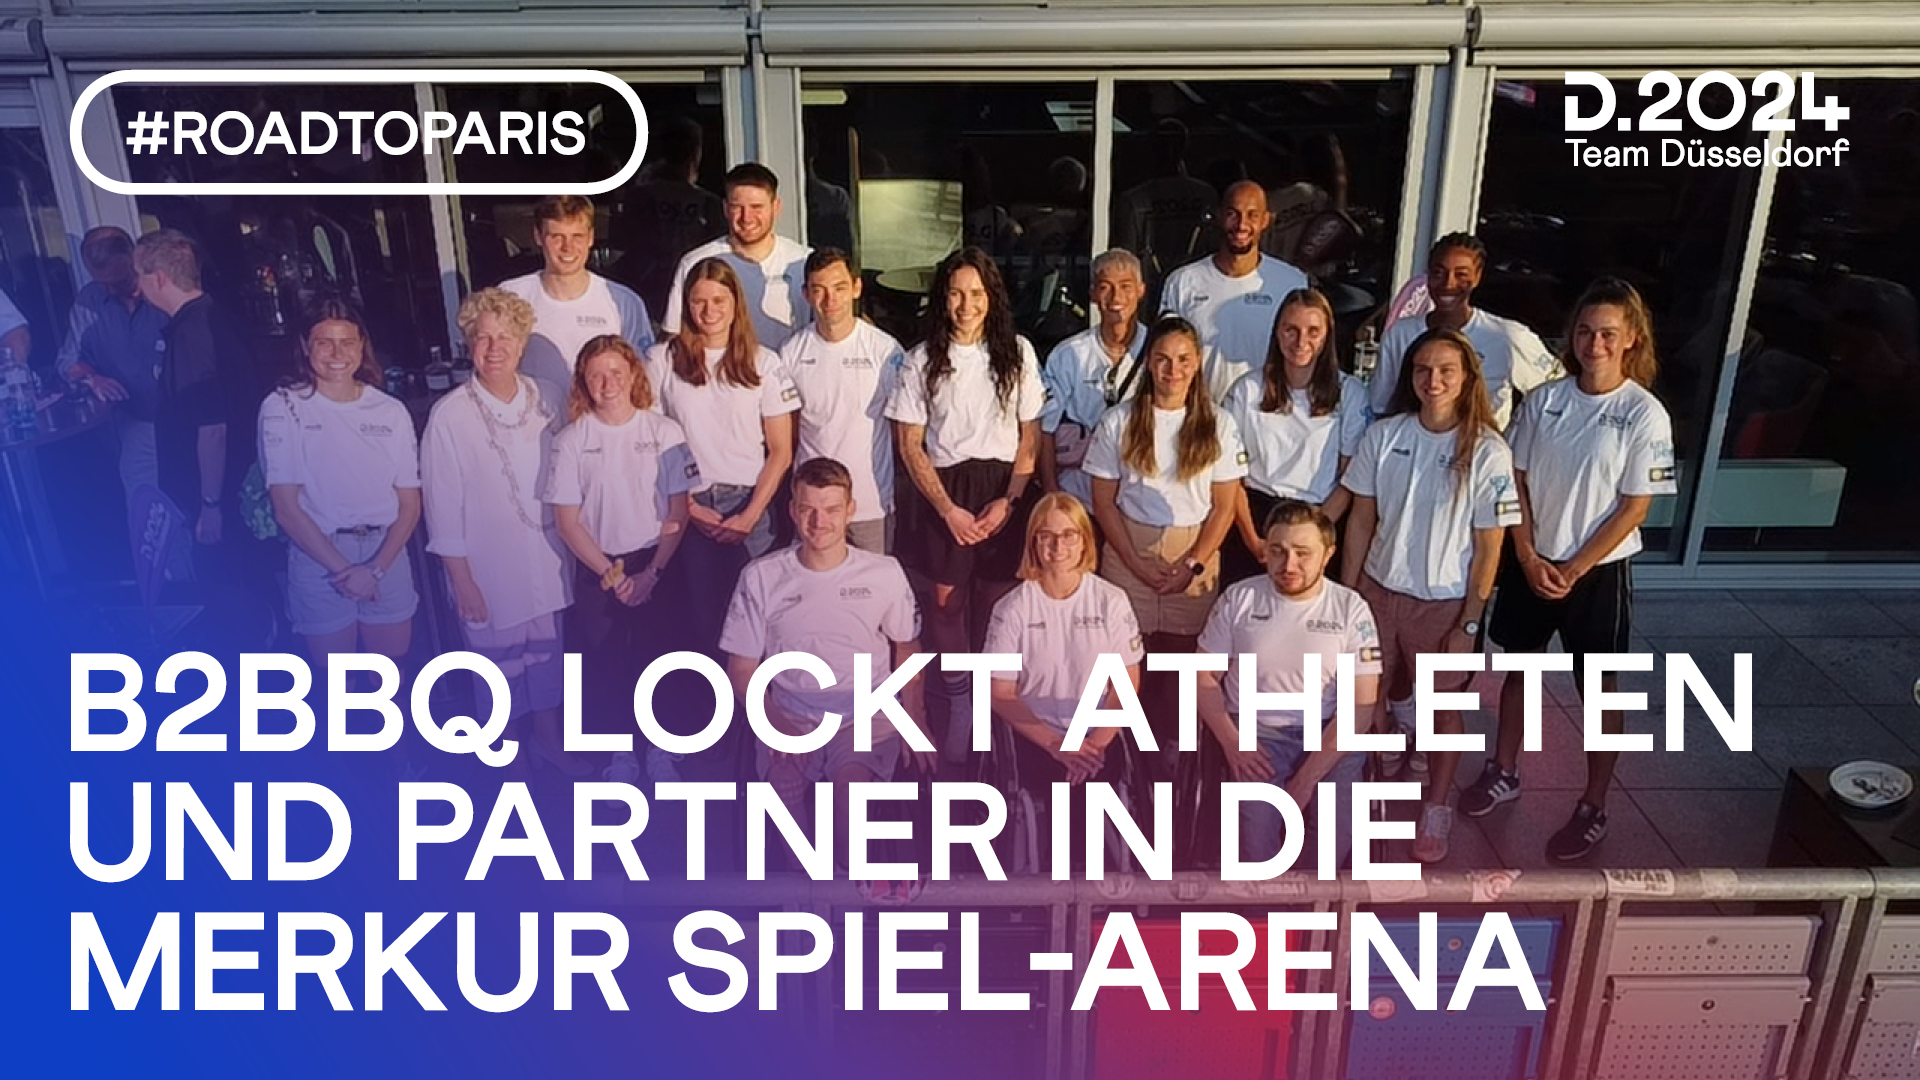 B2B BBQ mit dem Team Düsseldorf*Athleten treffen Partner & Sponsoren